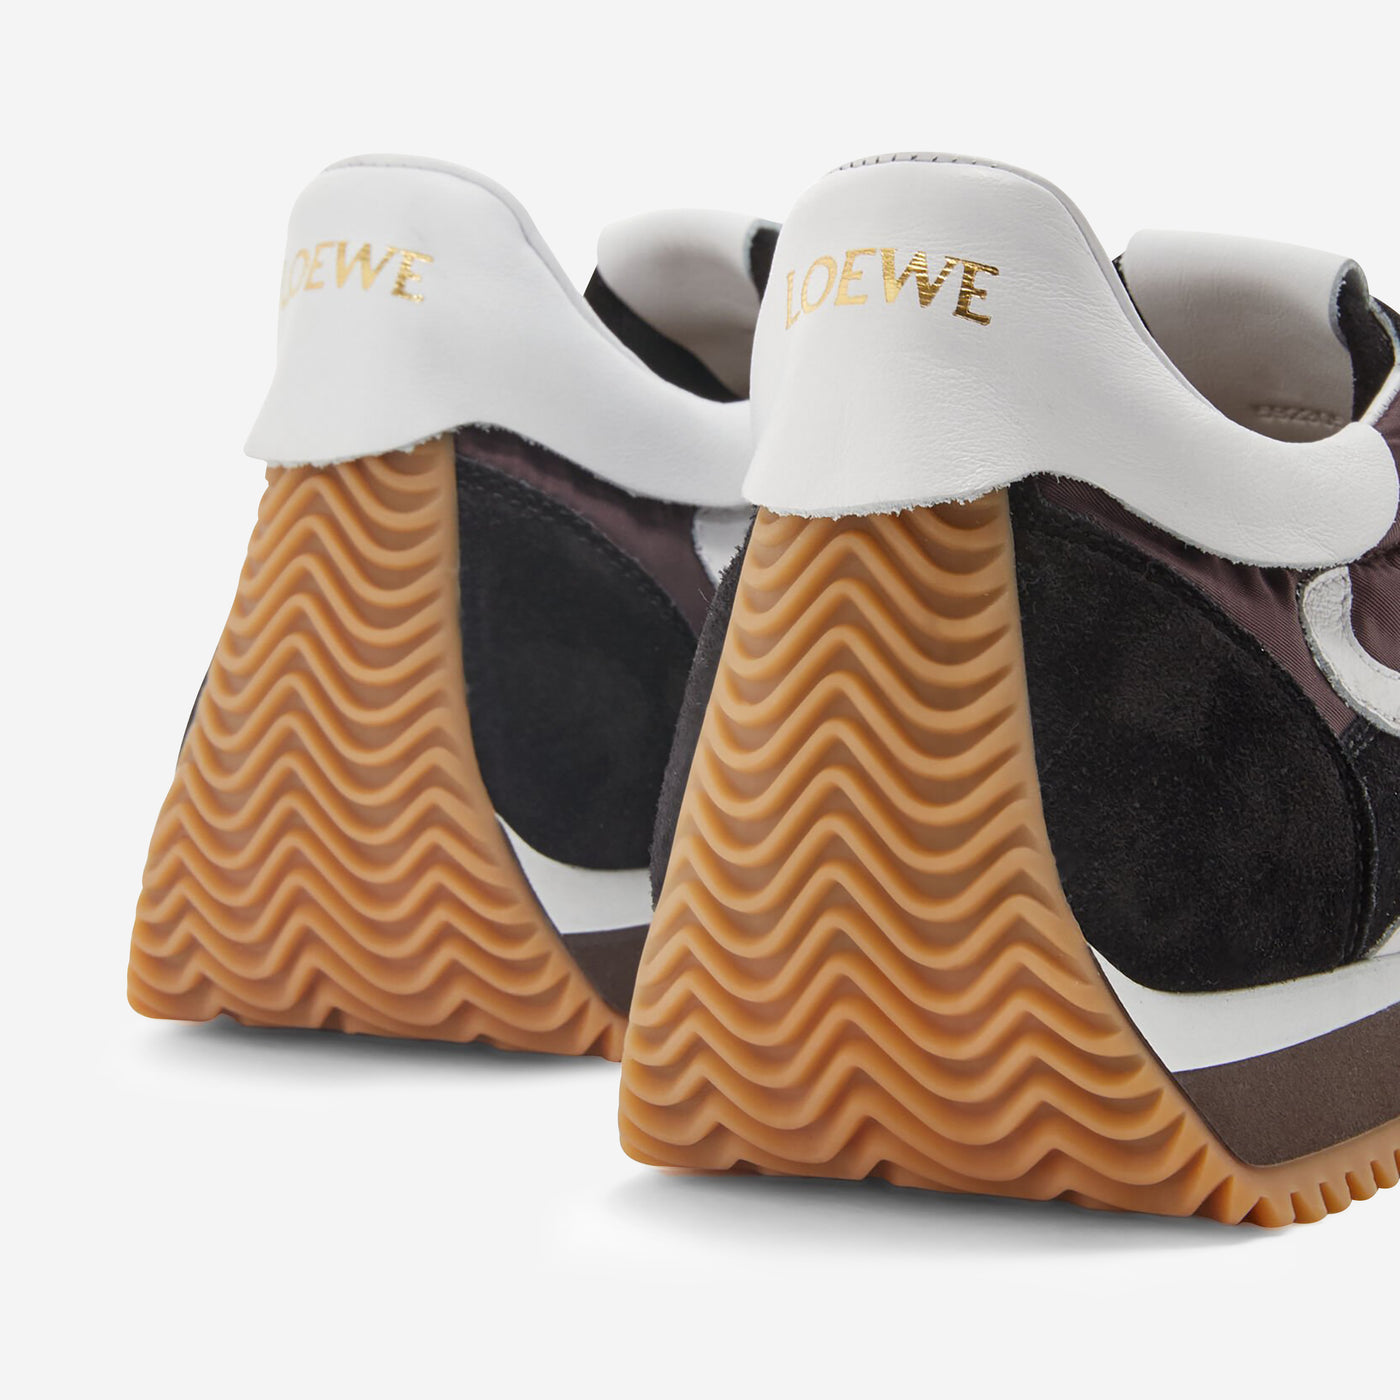 Loewe Flow Runner Sneaker